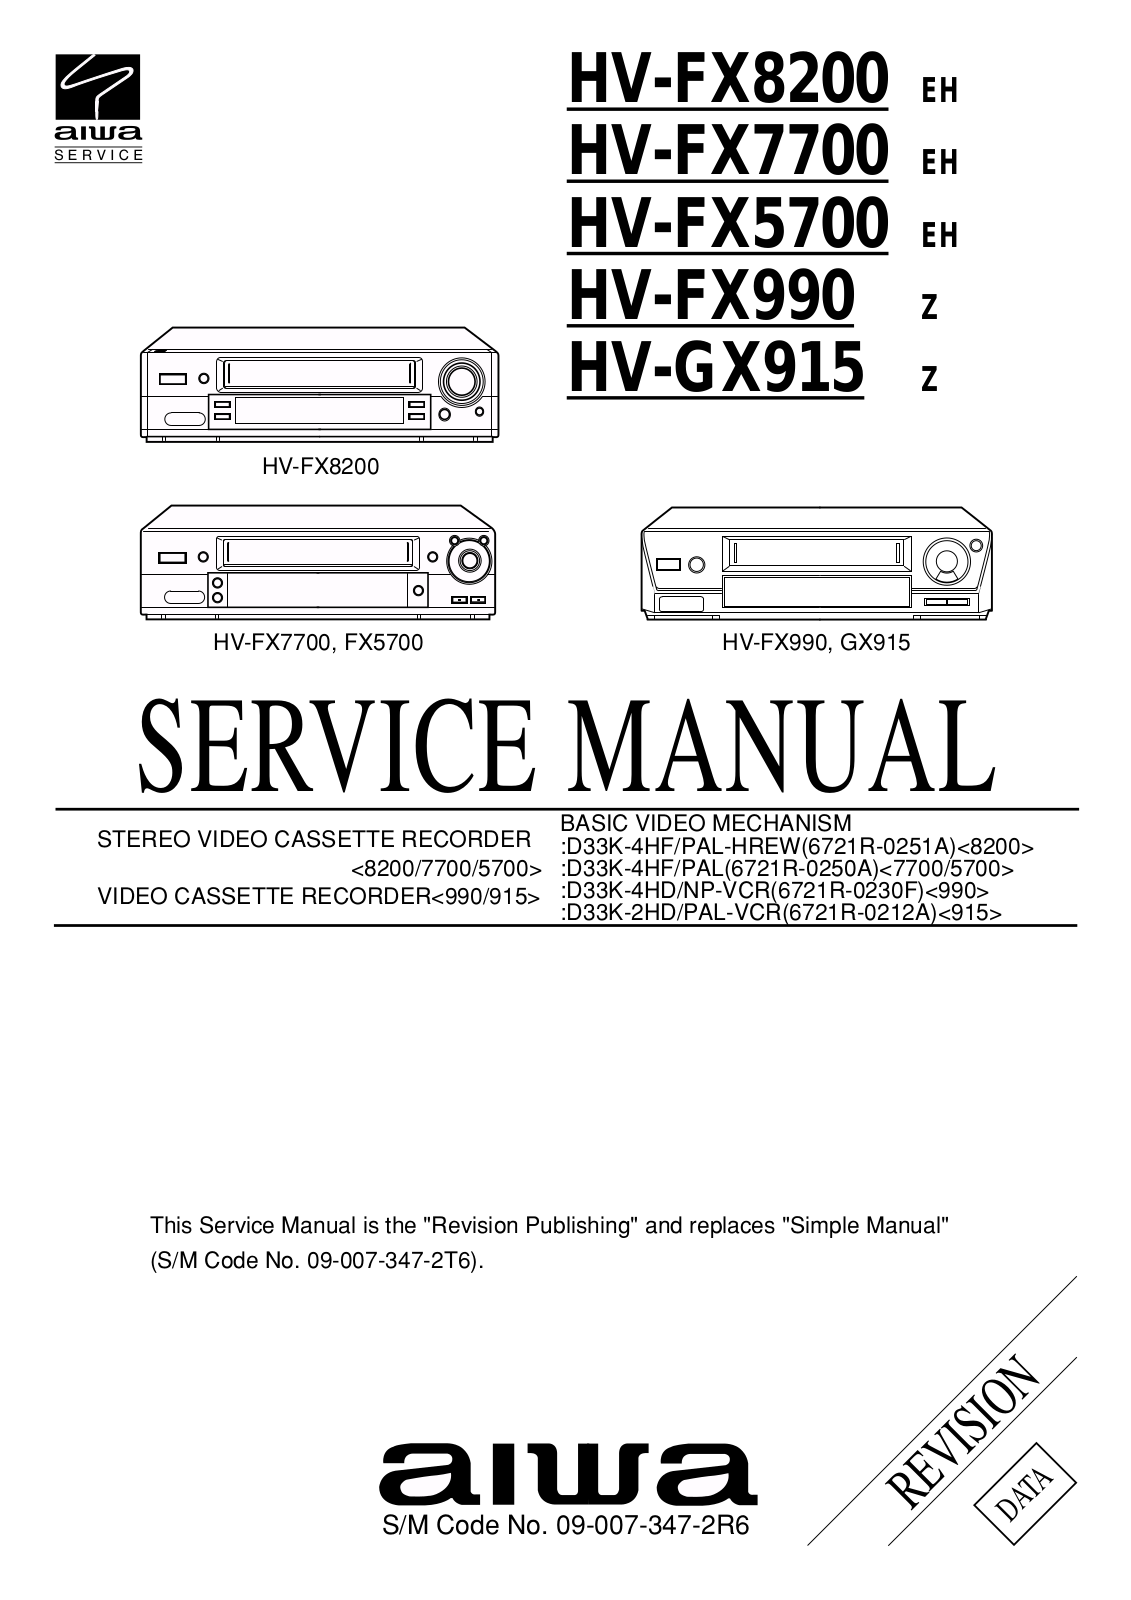 Aiwa HV-FX8200, HV-FX5700, HV-FX990, HV-GX915 Service Manual